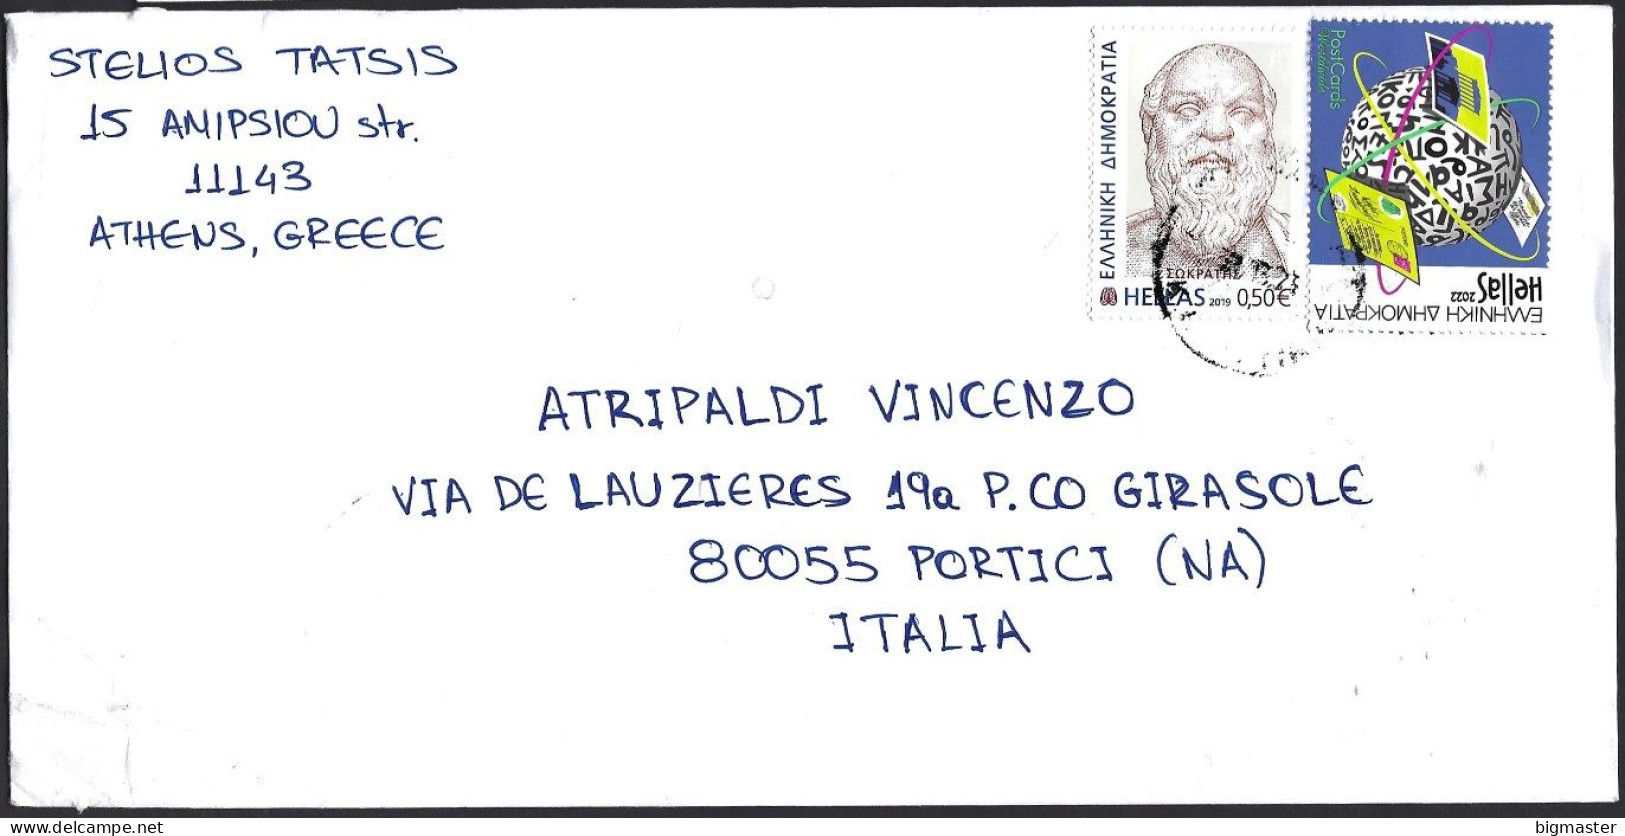 Str. EU-Grecia SP 2023 Postamail For Italy  2 VAL.fu - Cartas & Documentos